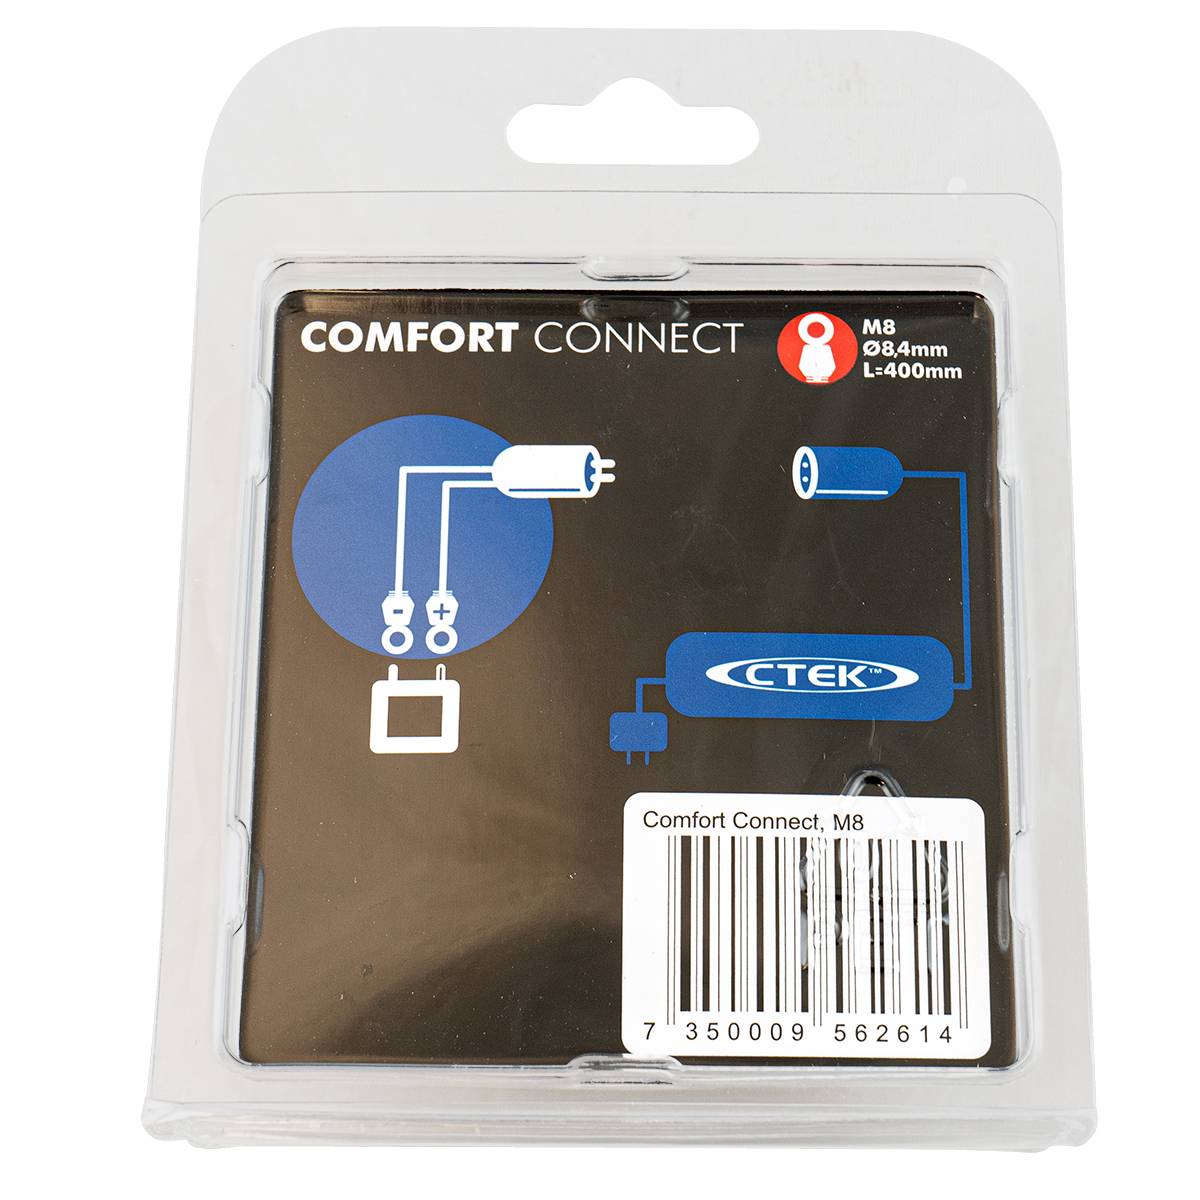 CTEK Comfort Connect M8 Schnellkontaktkabel für Ladegeräte